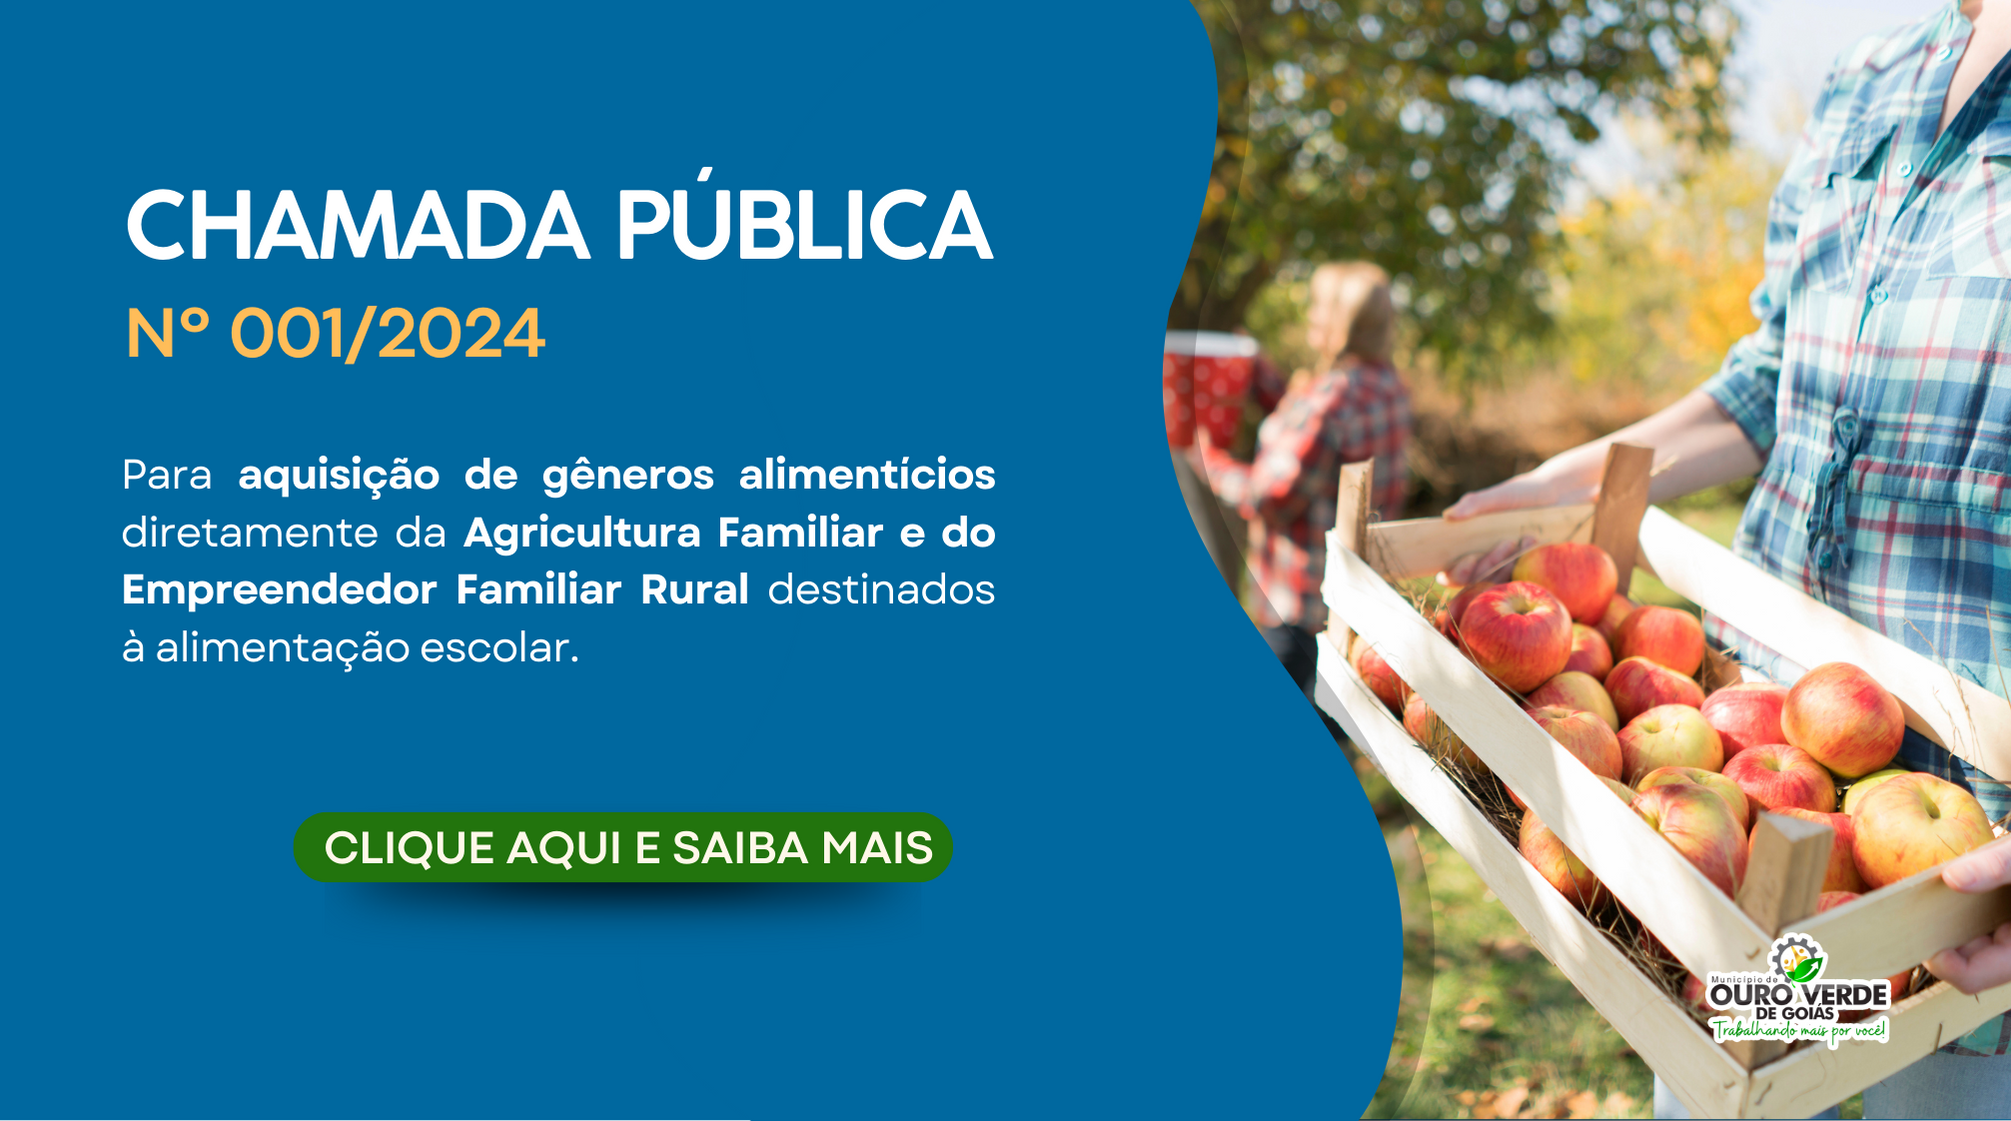 PUBLICADA A CHAMADA PÚBLICA Nº 01/2024 PARA AQUISIÇÃO DE GÊNEROS ALIMENTÍCIOS DA AGRICULTURA FAMILIAR E DO EMPREENDEDOR FAMILIAR RURAL DESTINADOS Á ALIMENTAÇÃO ESCOLAR DO ENSINO BÁSICO DO MUNICIÍPIO DE OURO VERDE – GO